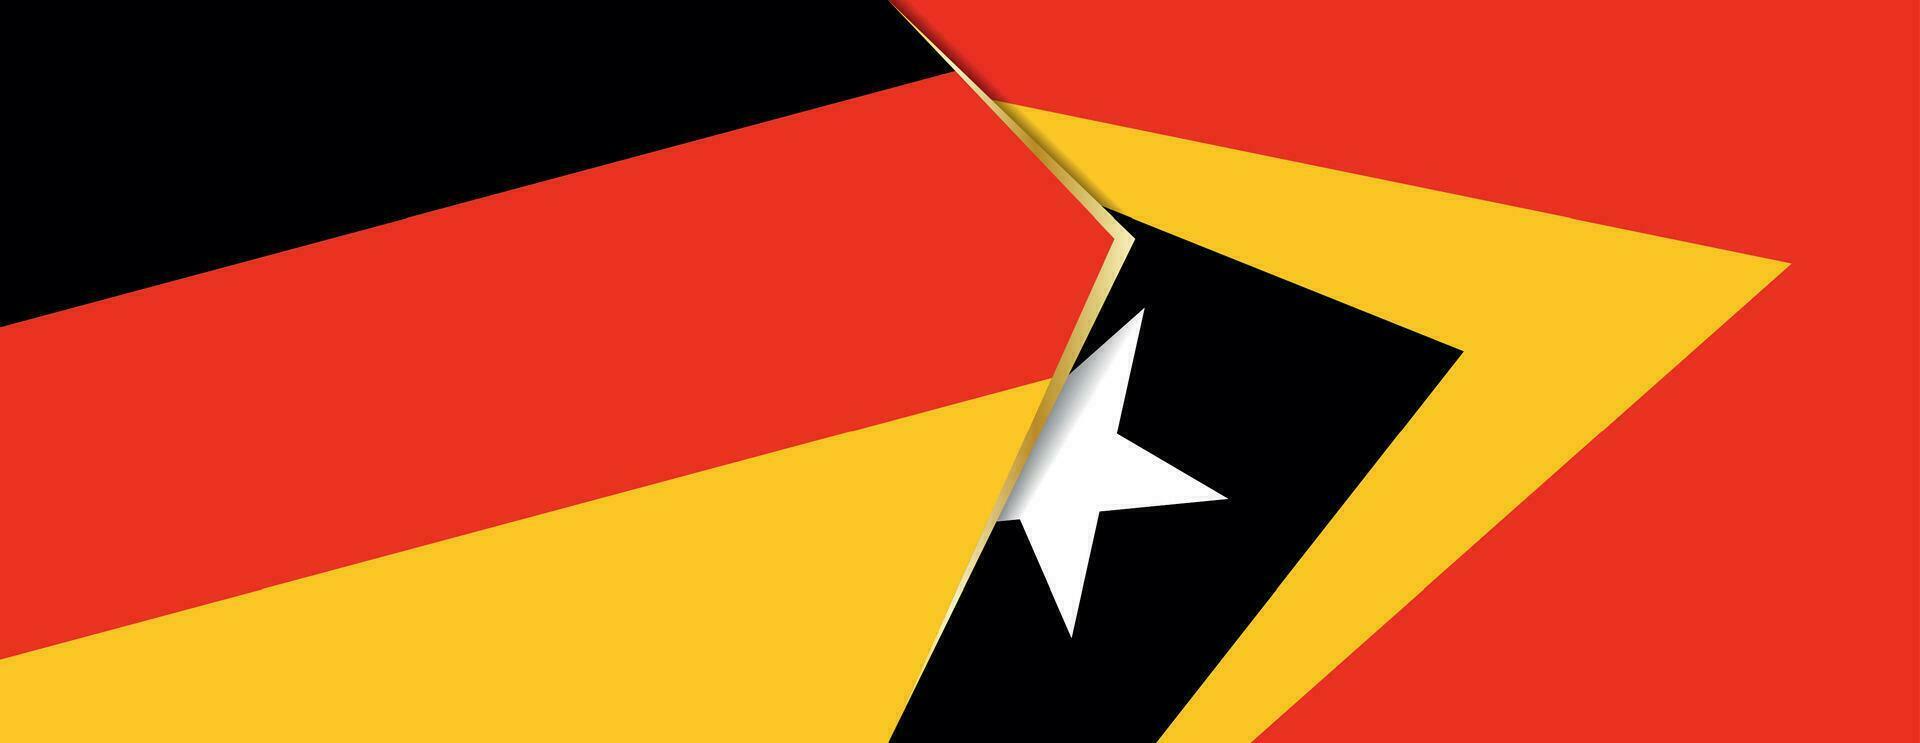 Deutschland und Osten Timor Flaggen, zwei Vektor Flaggen.